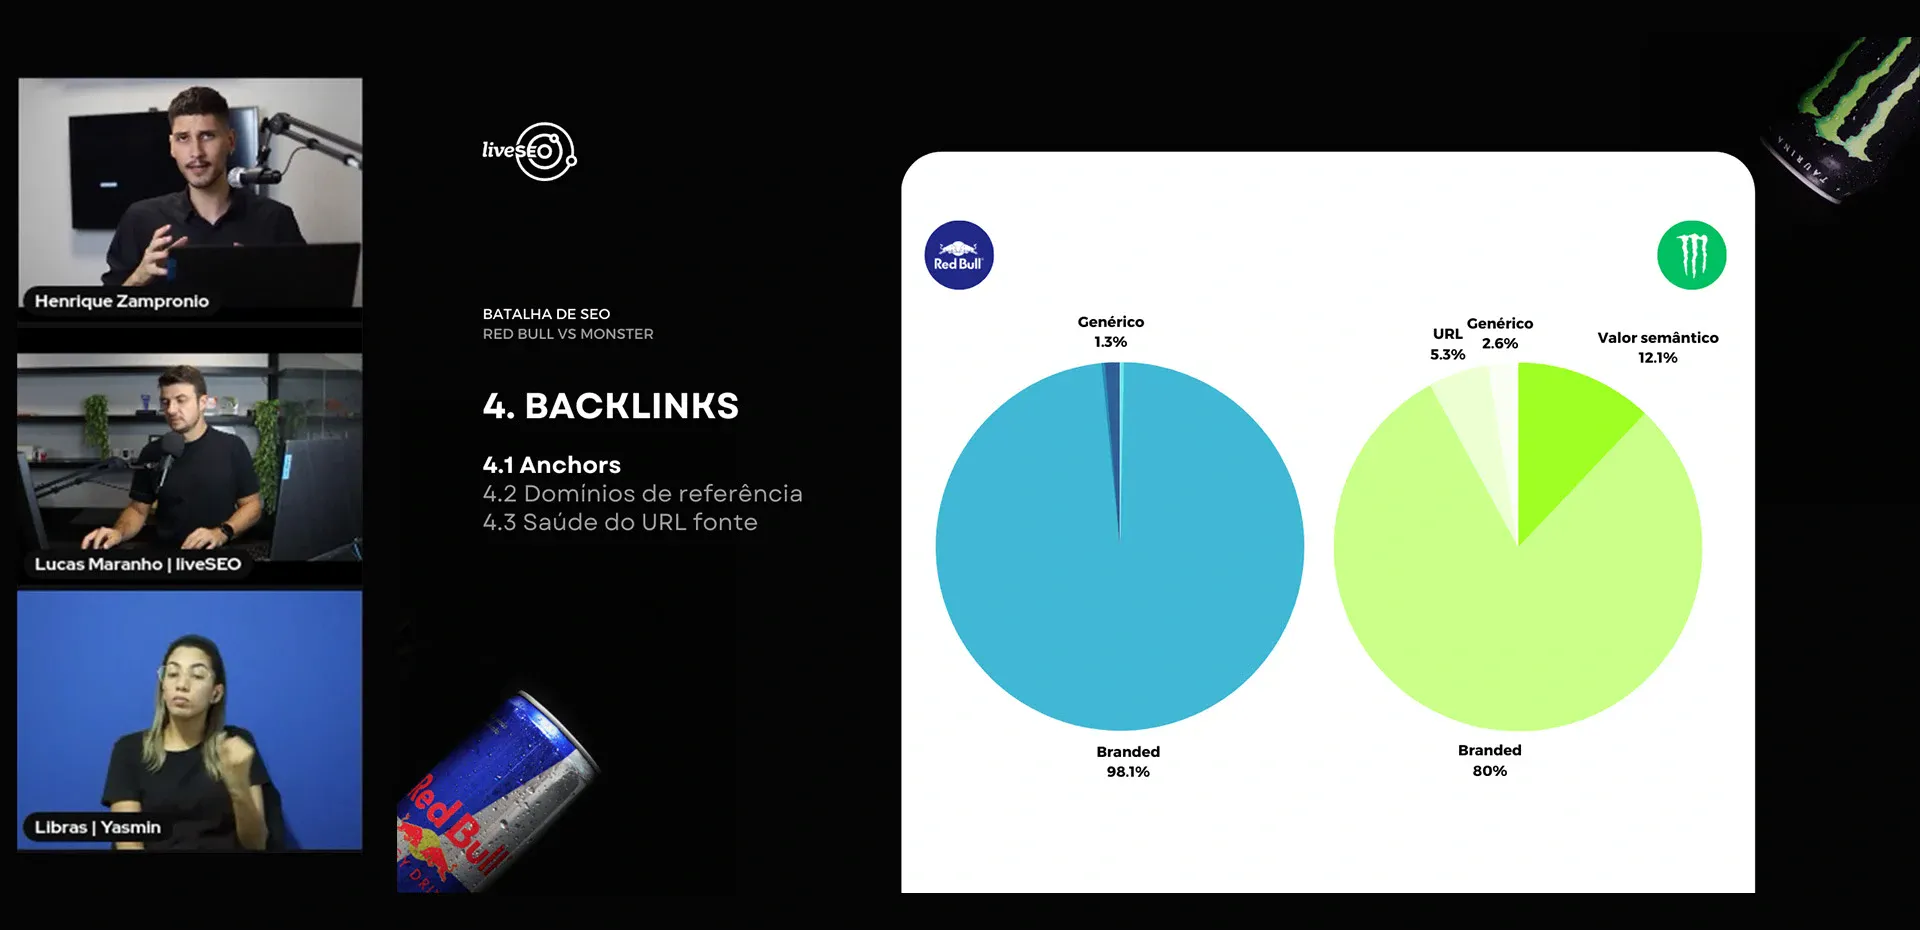 Os participantes da live analisam os tipos de anchors existentes dentro da gama de backlinks do site